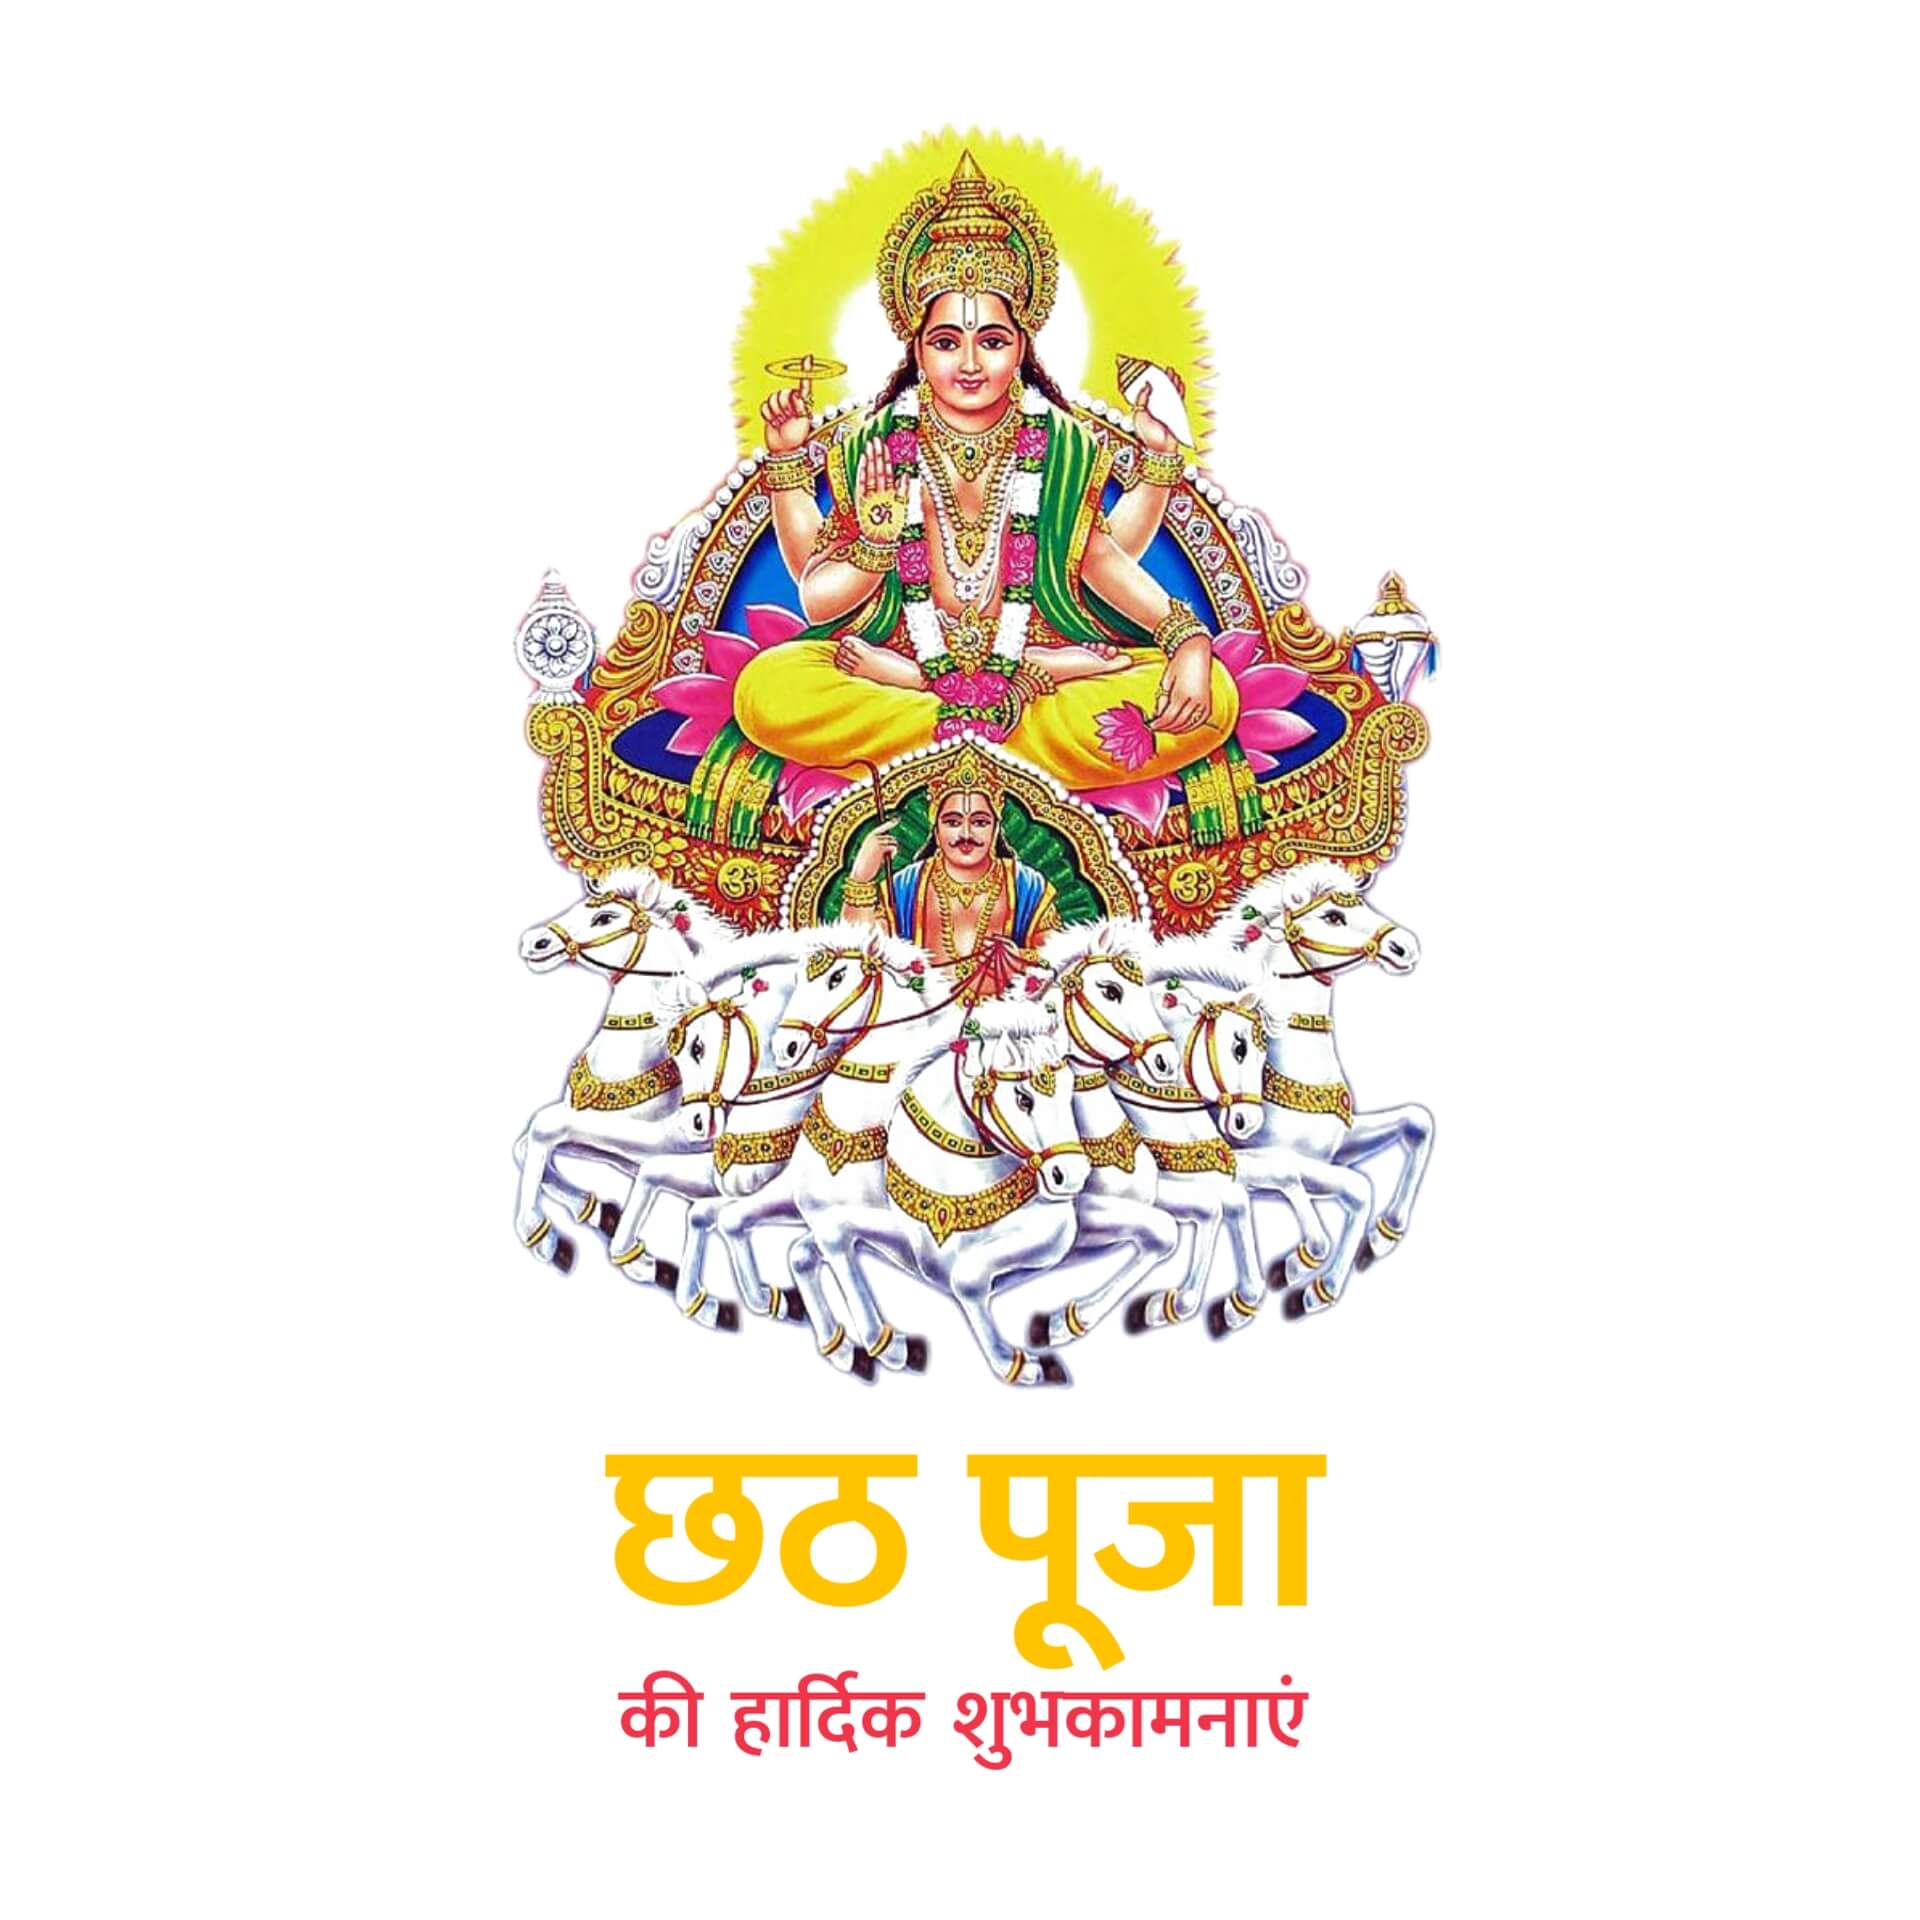 Happy Chhath Puja Image in Hindi